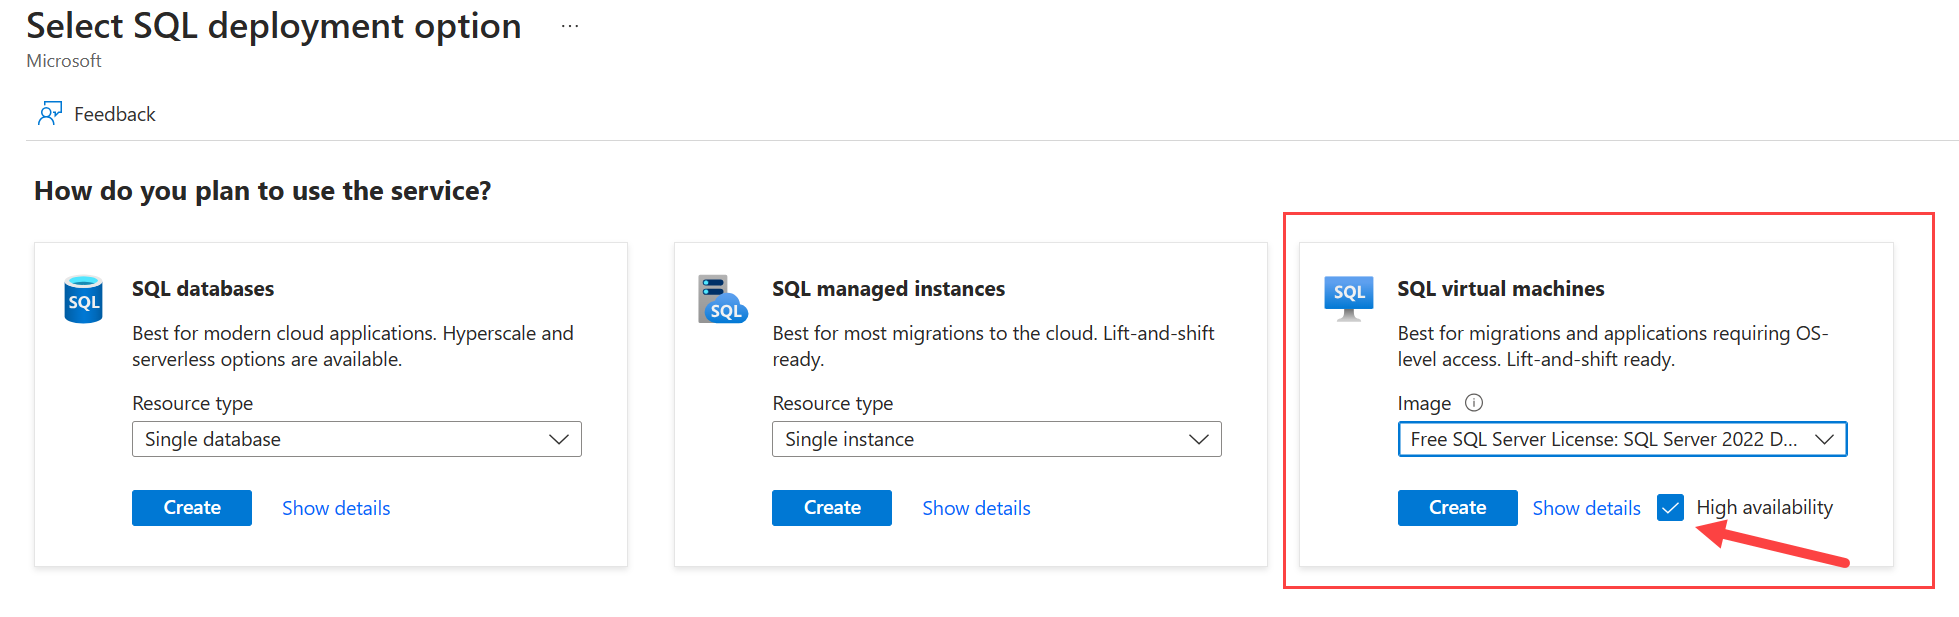 Captura de tela do portal do Azure mostrando a página para selecionar uma opção de implantação do SQL Server, com a alta disponibilidade selecionada. 